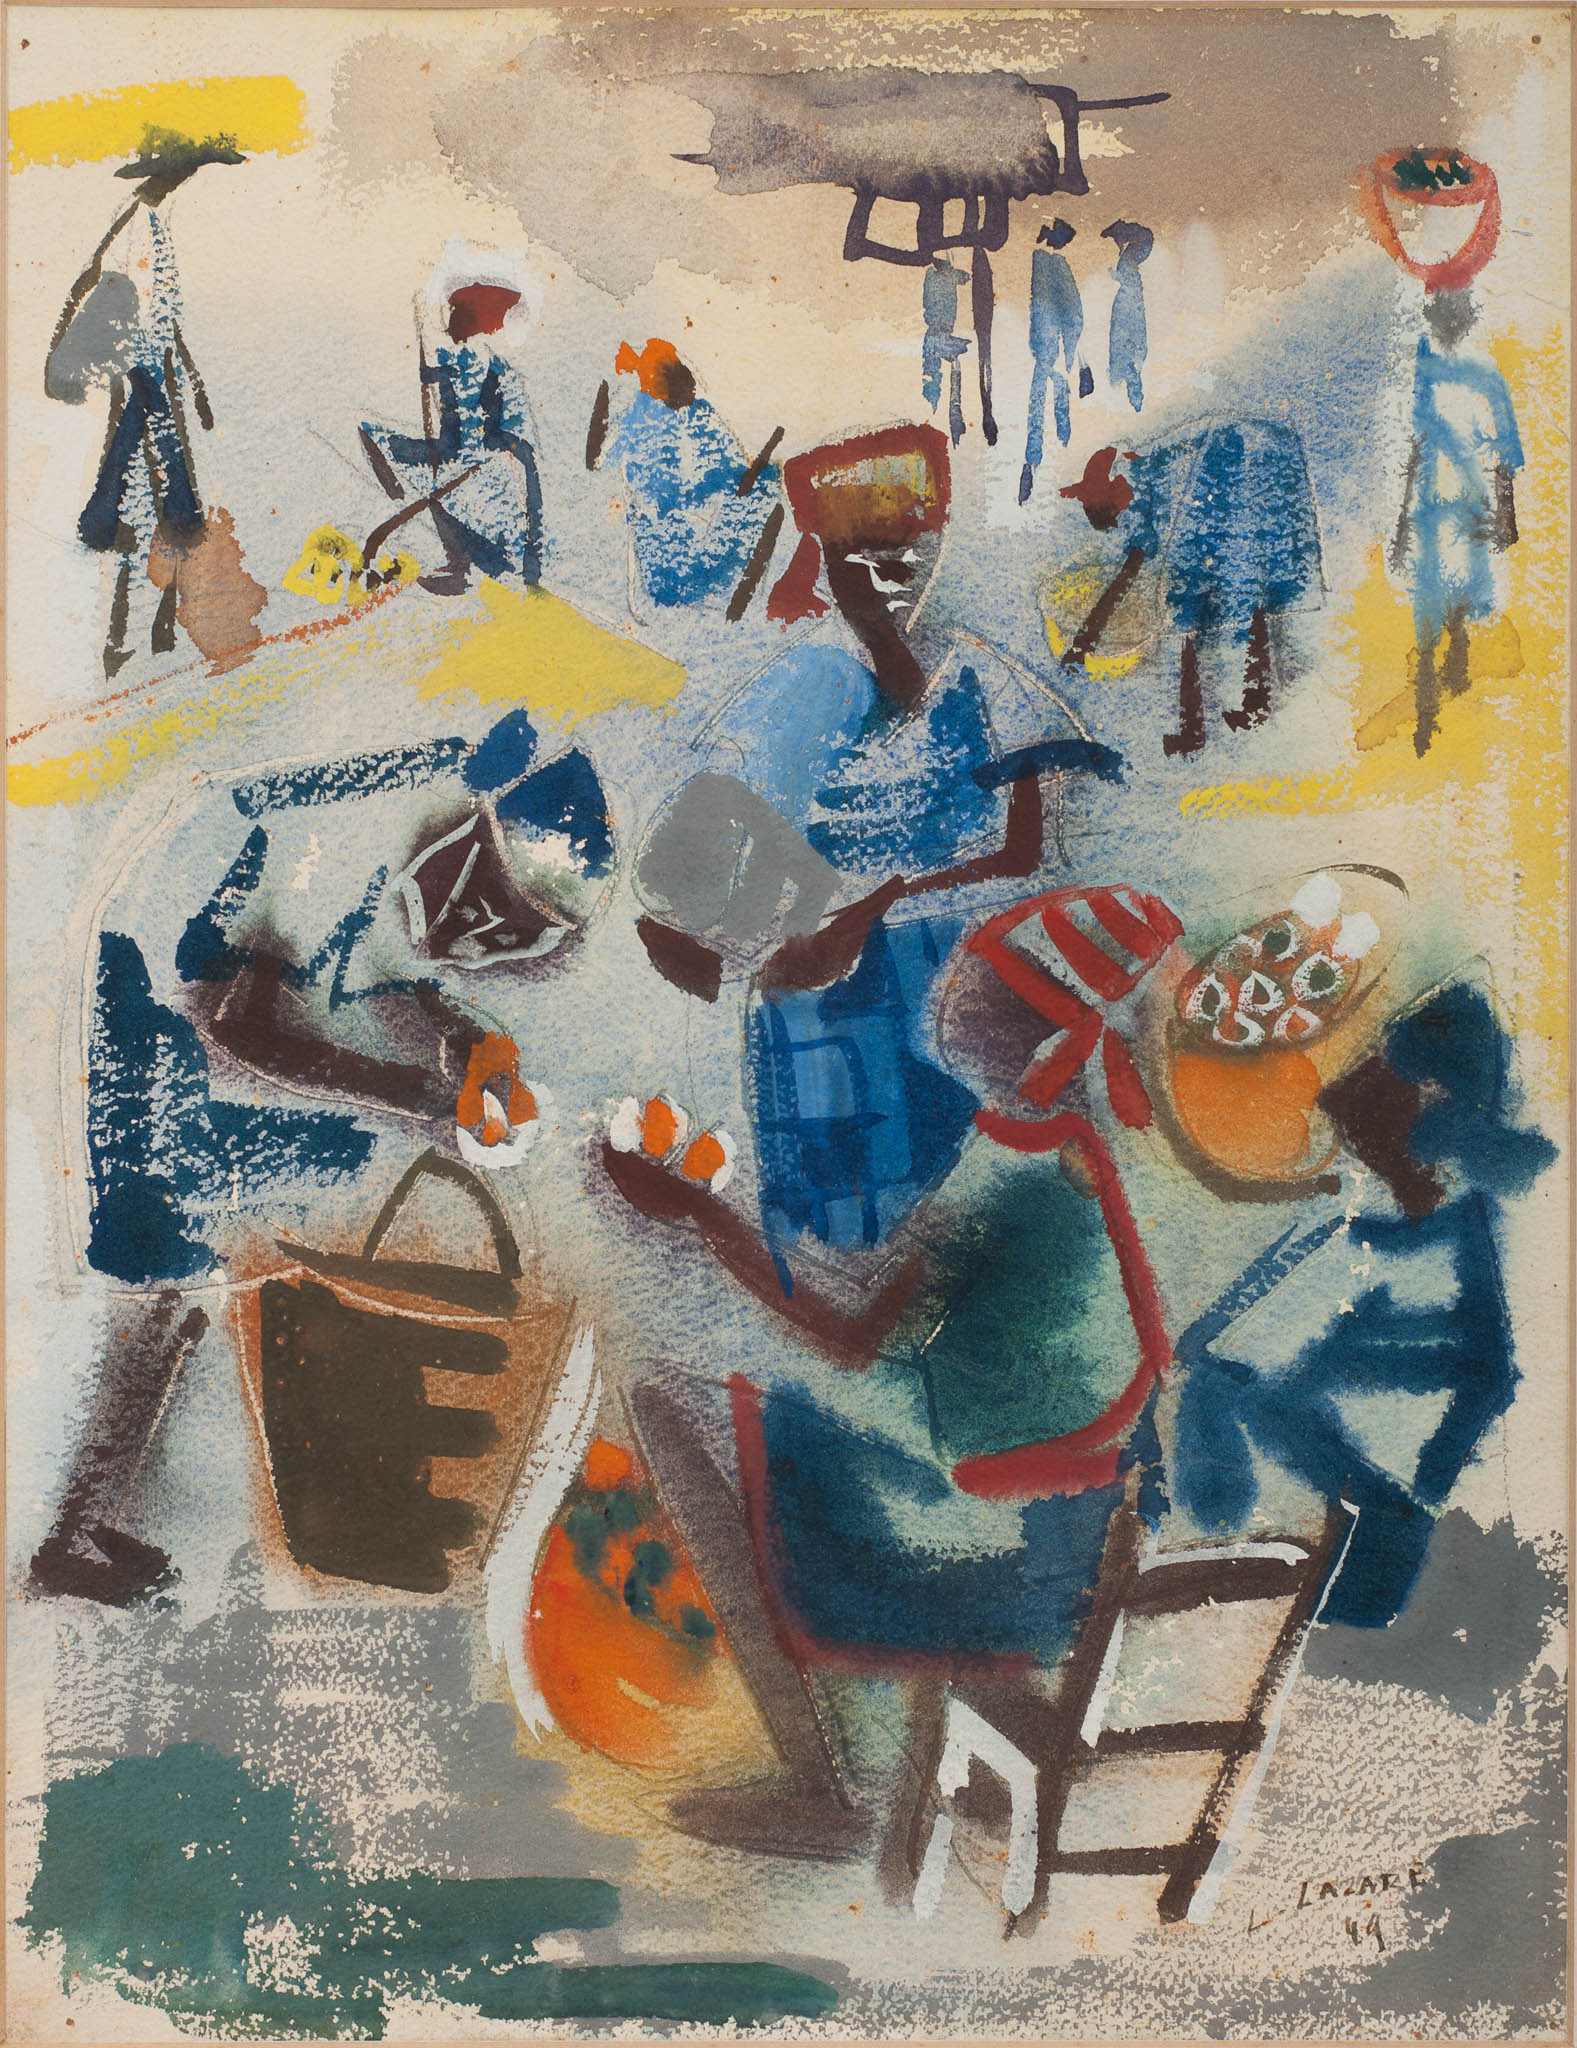 Abstract Market Scene, 1949